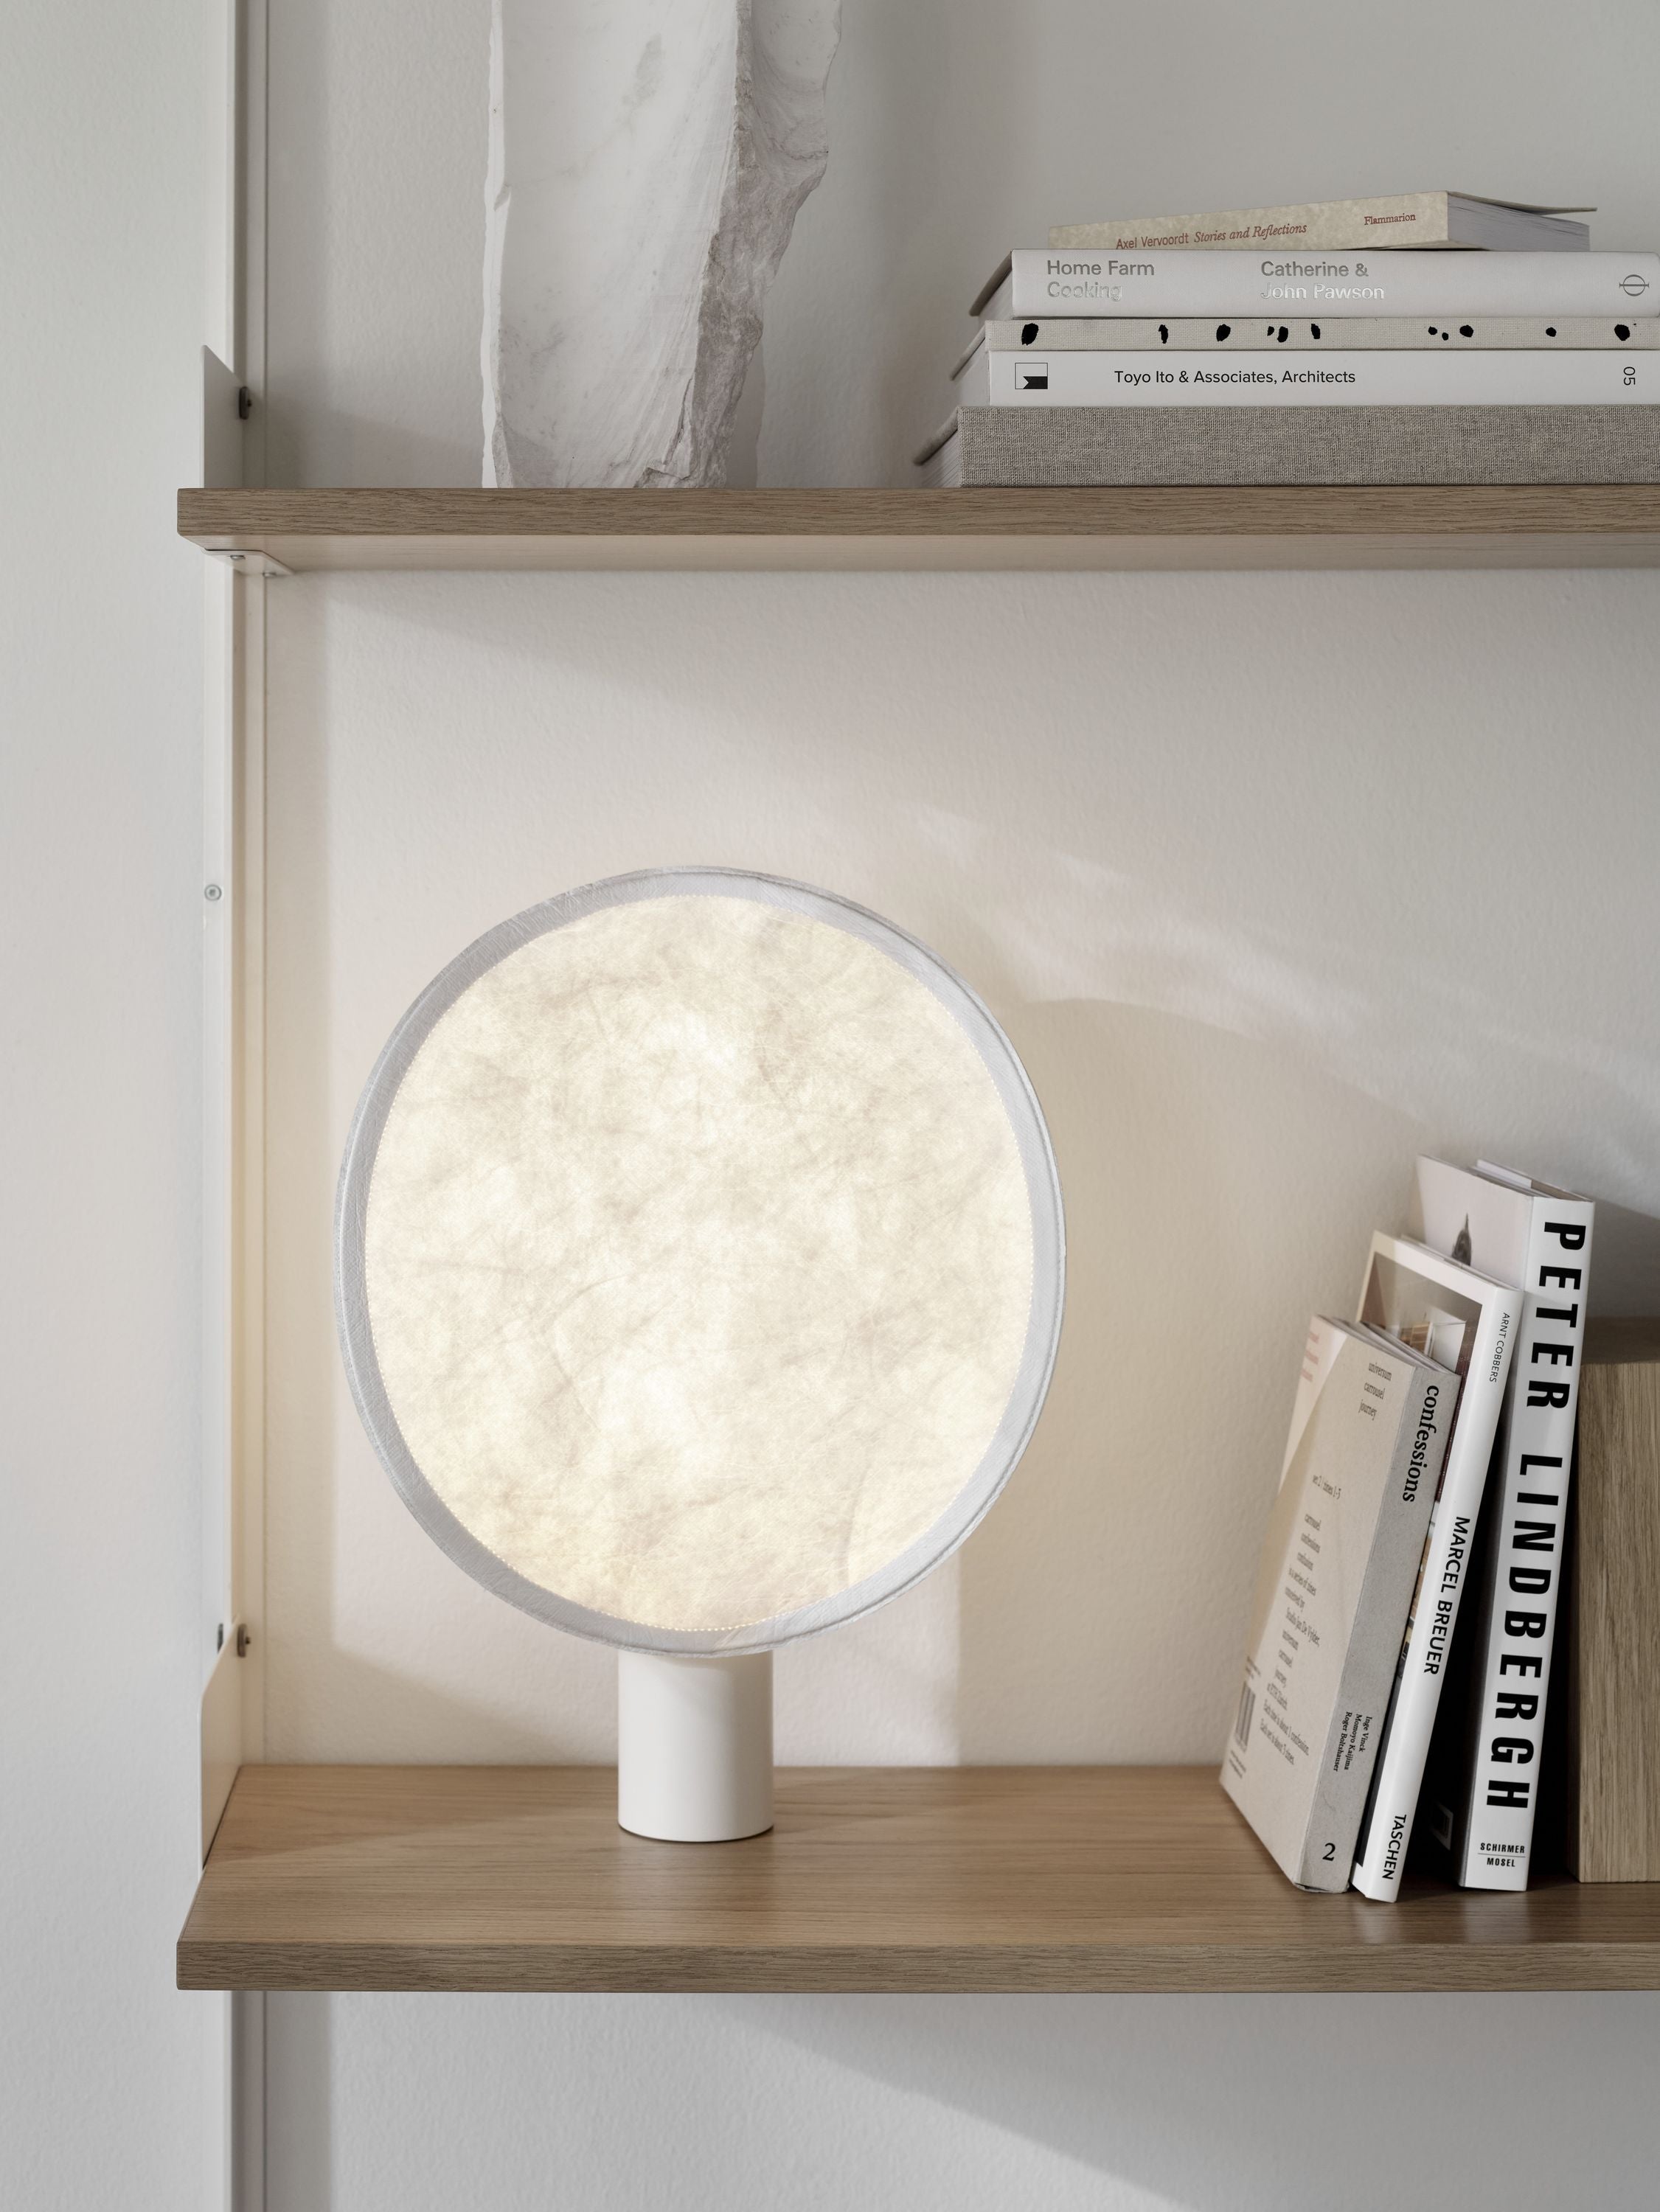 Nová díla napjatá přenosná stolní lampa, bílá